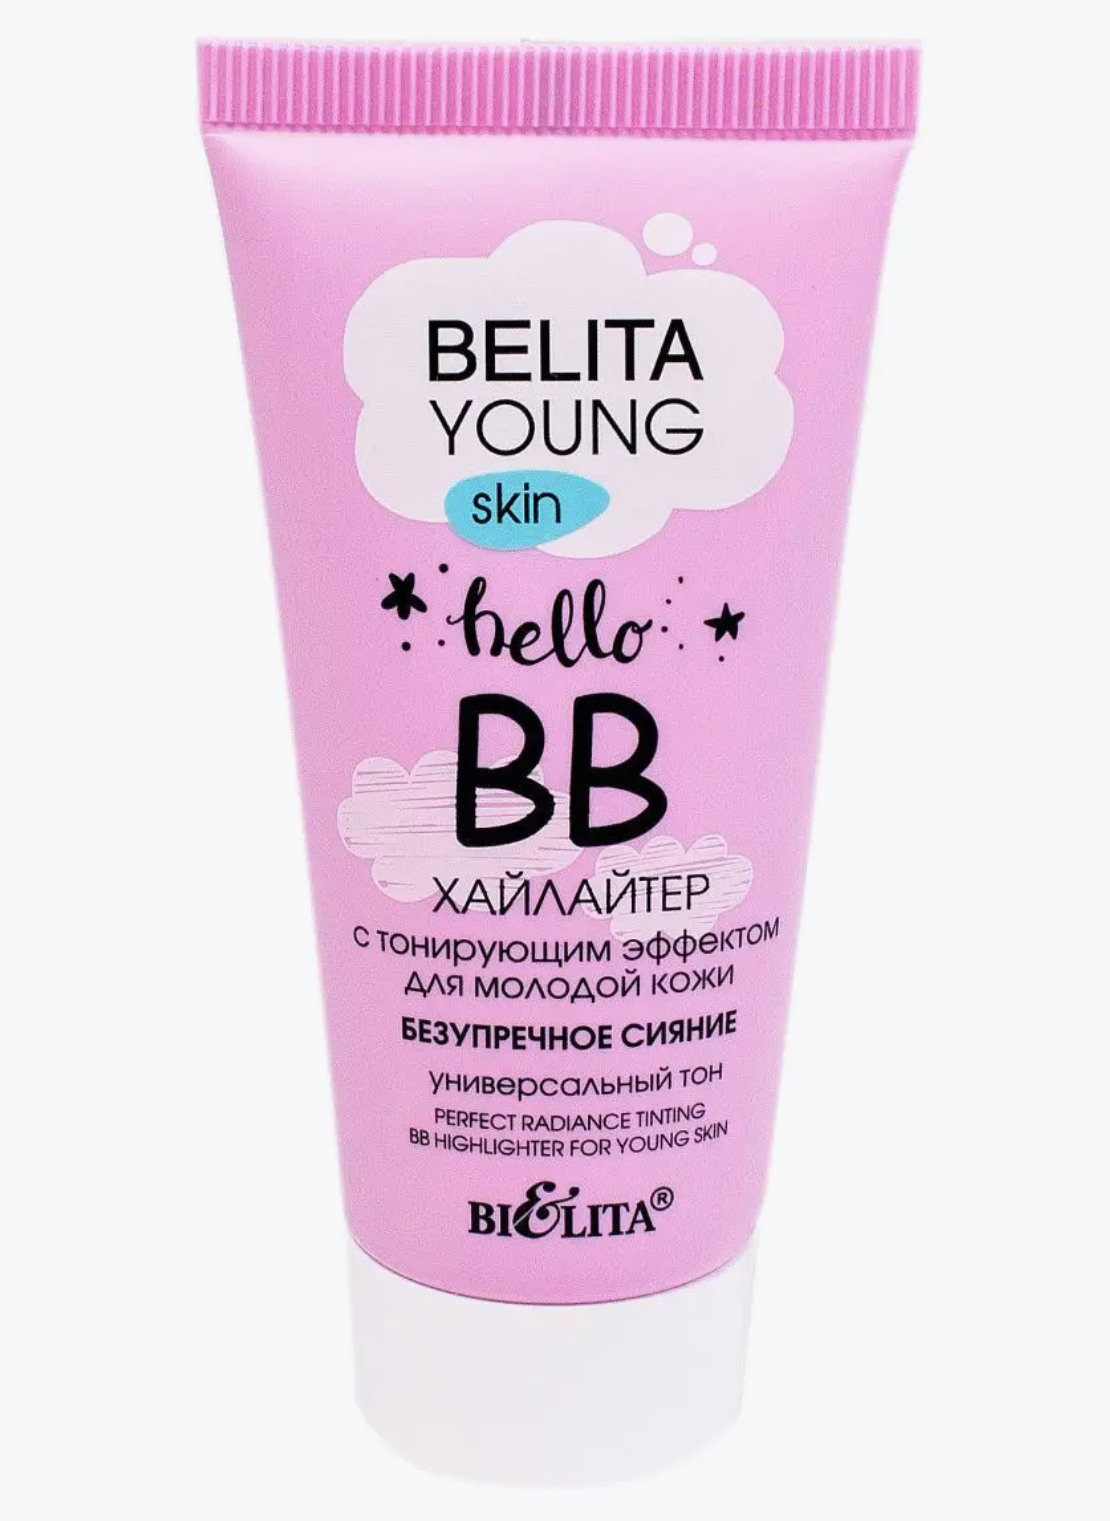 Белита / Belita Young BB-хайлайтер тонирующий эффект для молодой кожи лица Безупречное сияние 30 мл